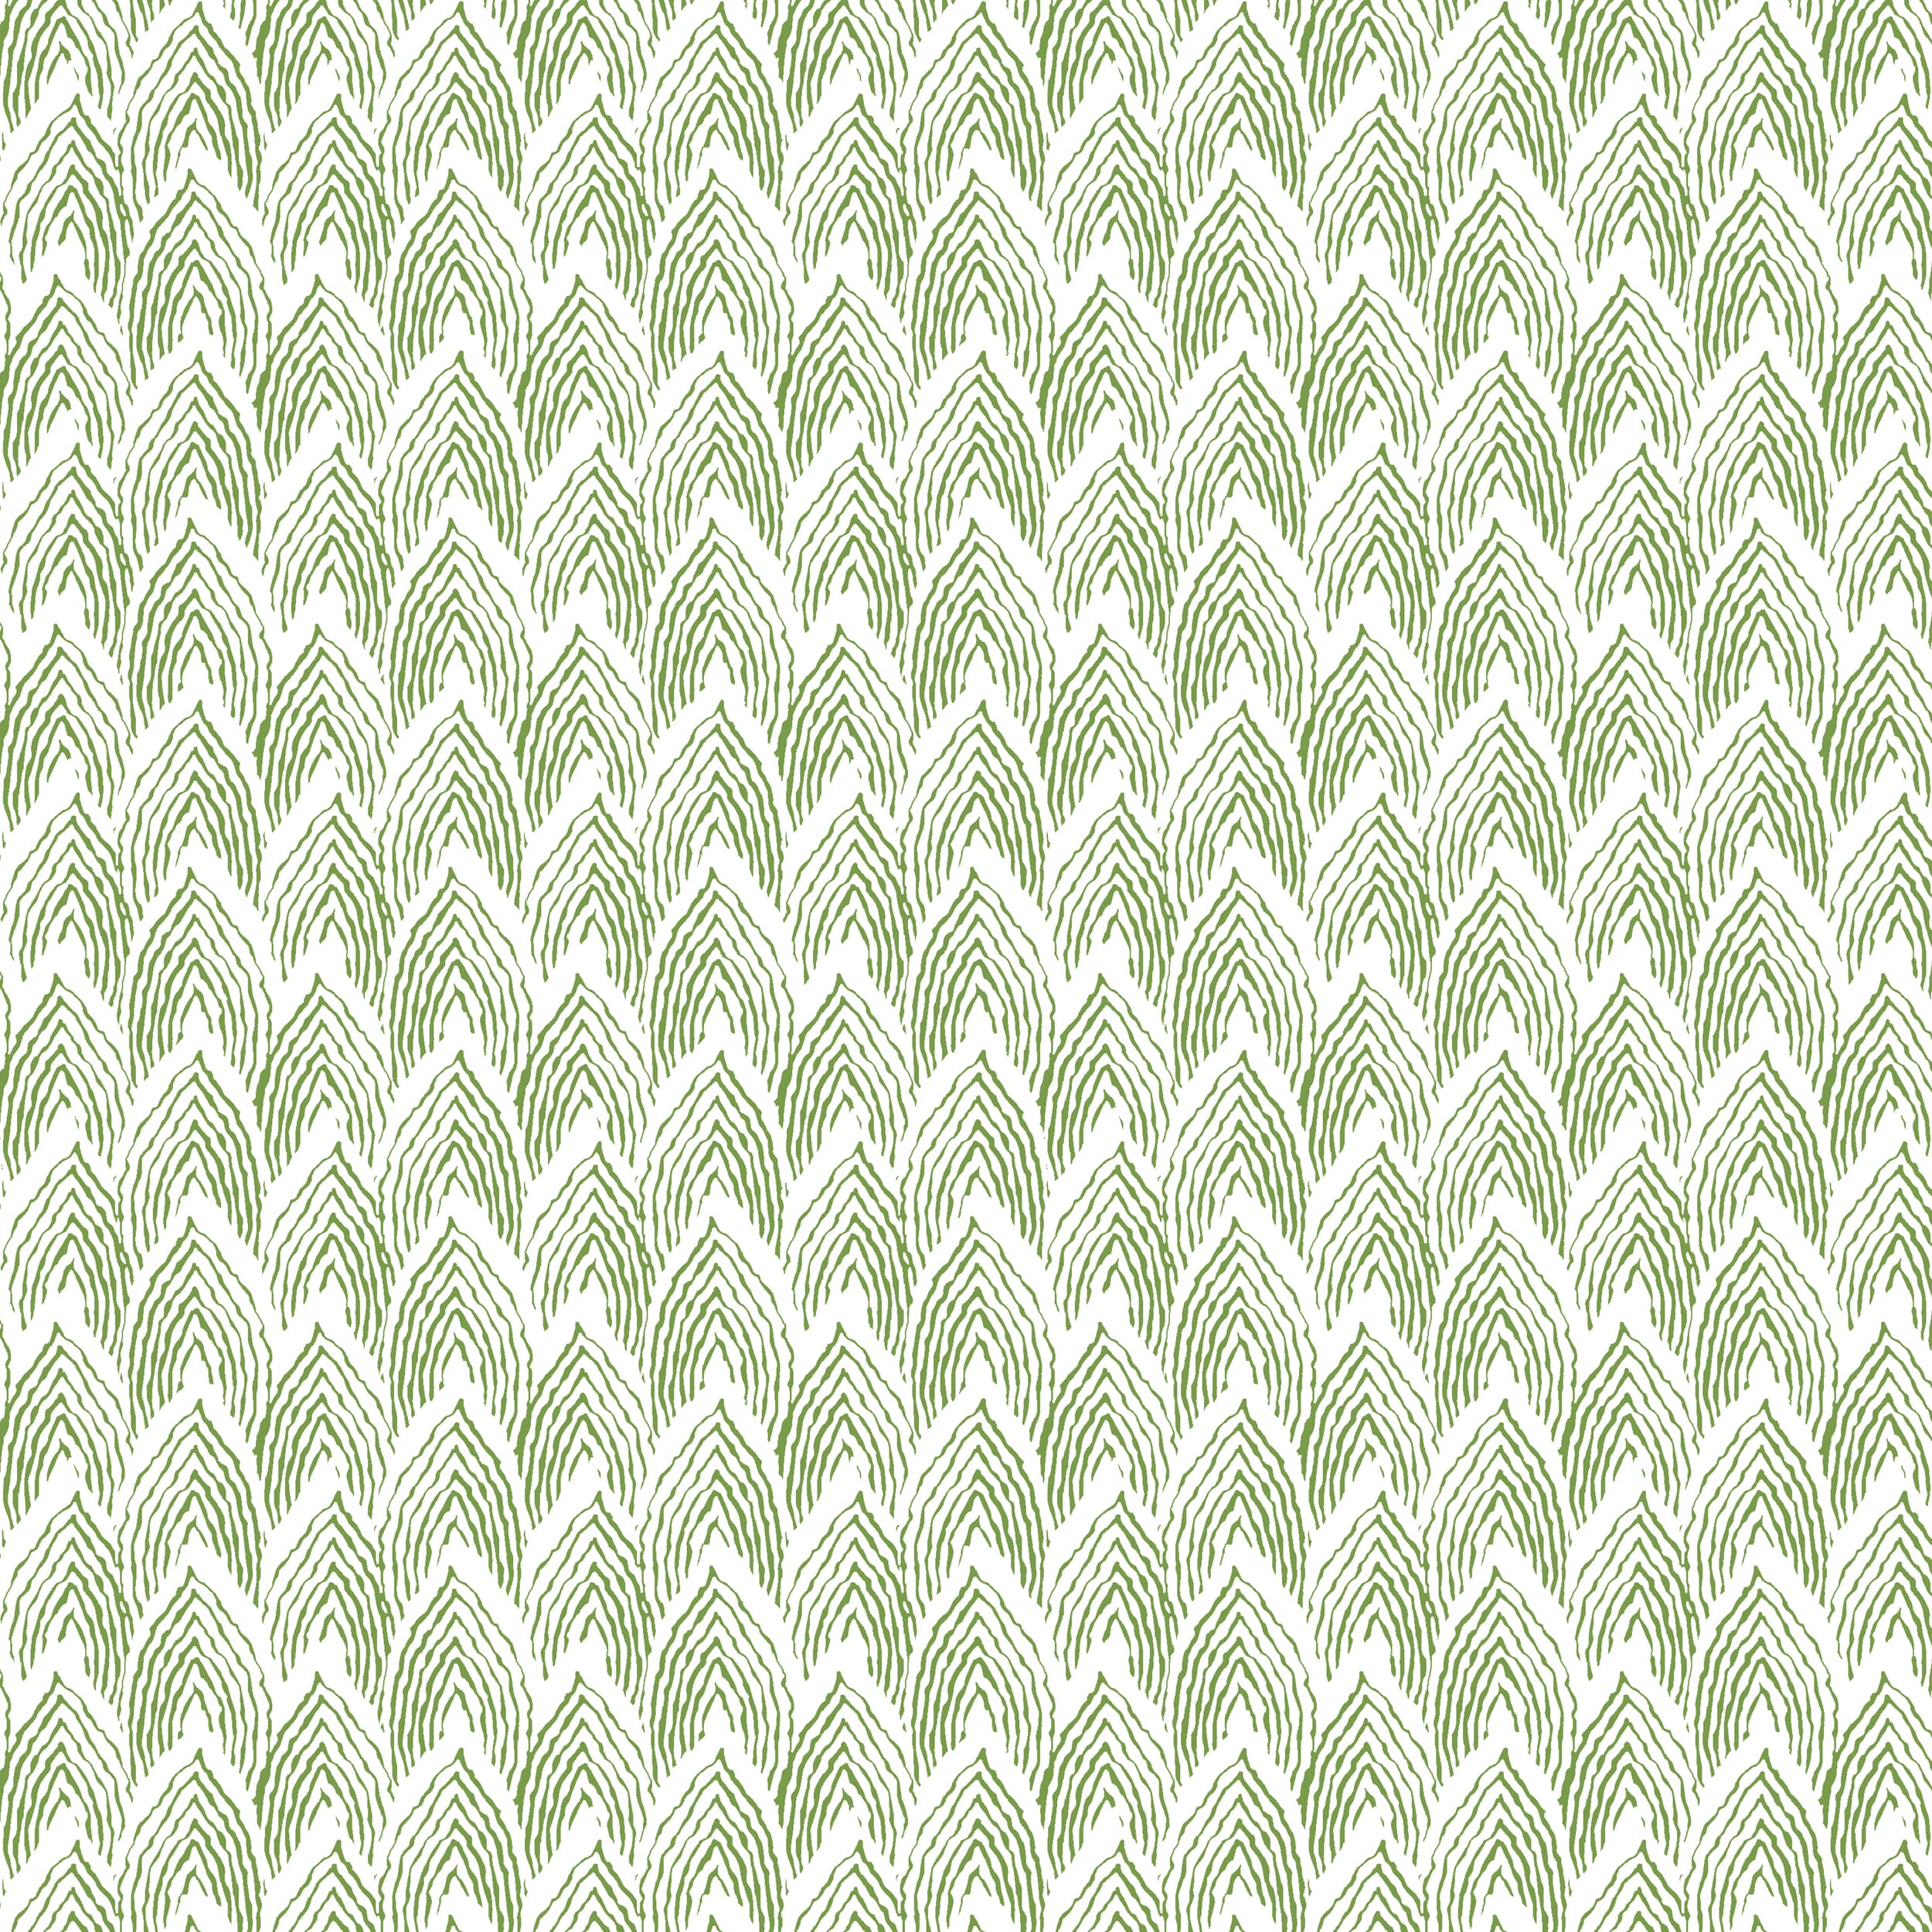 W01vl-2 Piedmont Grass Wallpaper by Stout Fabric